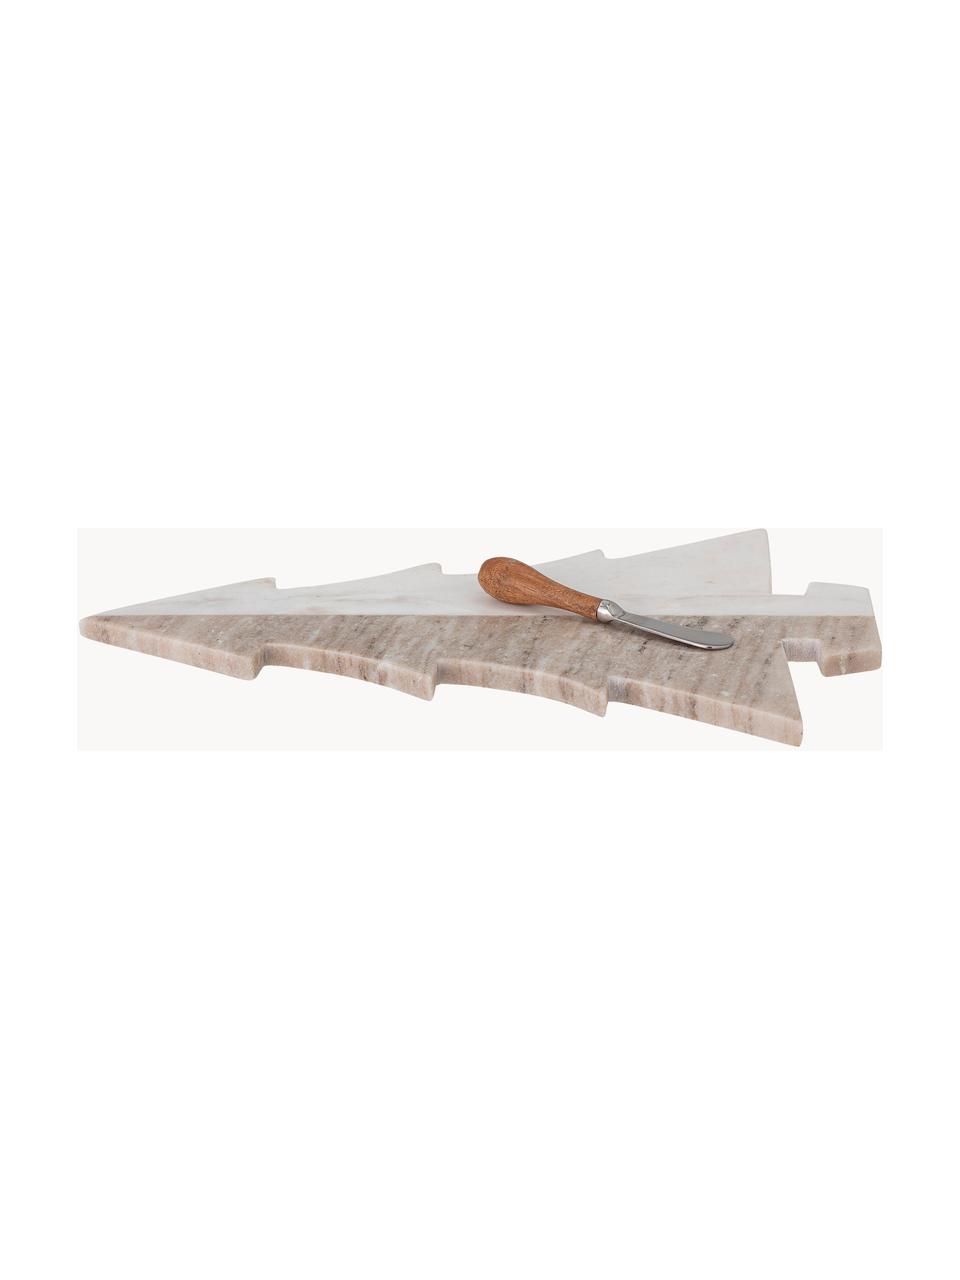 Marmor-Servierplatte Malalai mit Messer, L 42 x B 28 cm, Marmor, Weiß, Beige, marmoriert, Set mit verschiedenen Größen